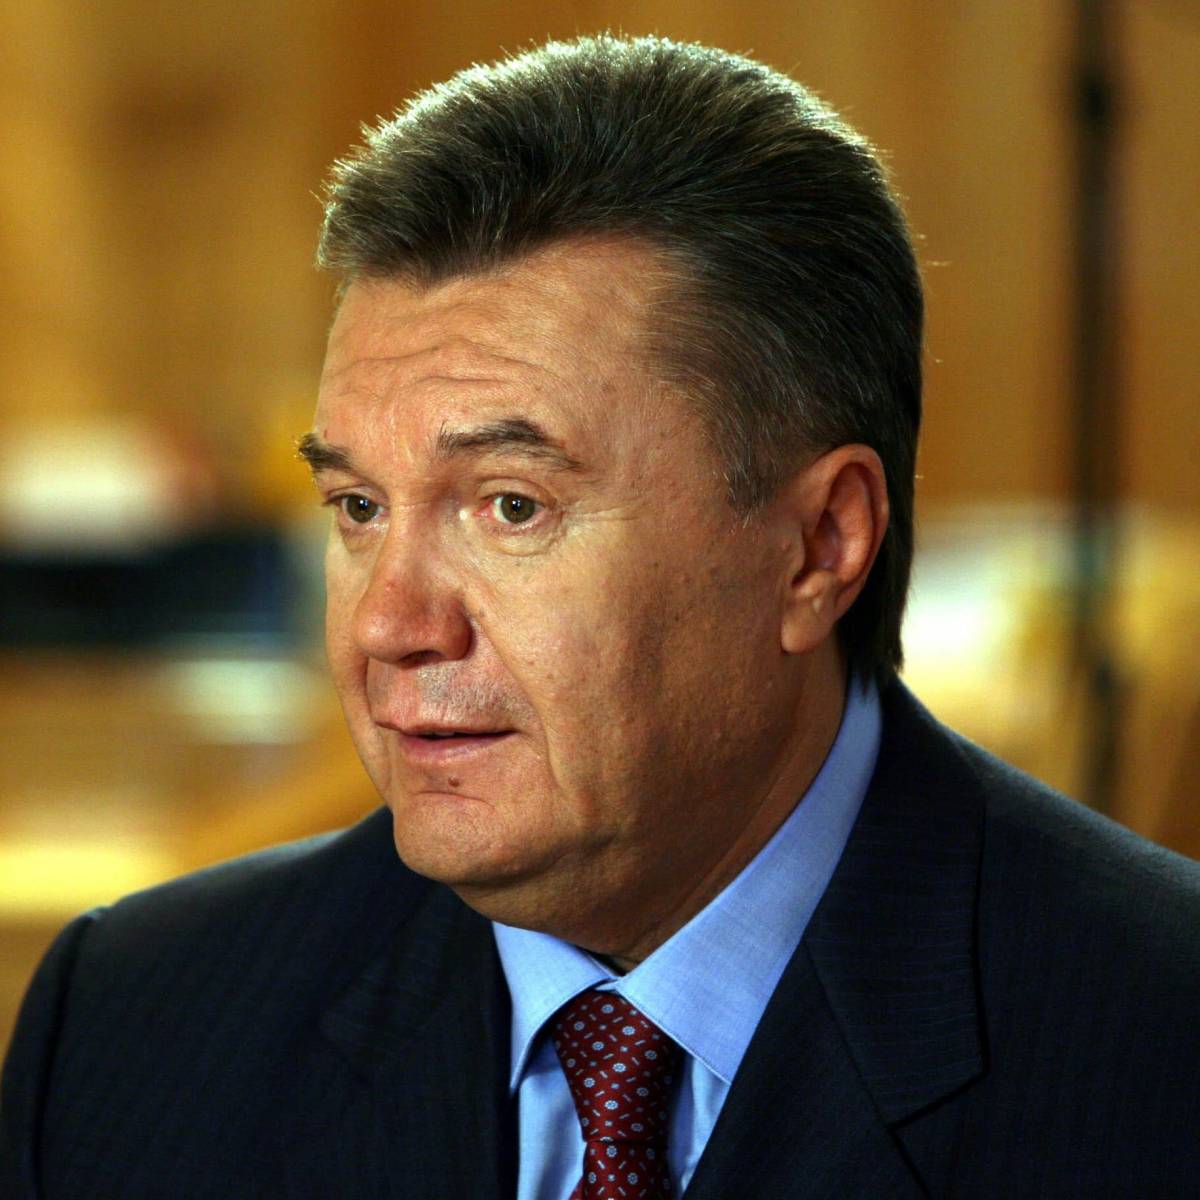 Возвращение Януковичу звания президента повлечет необратимые последствия